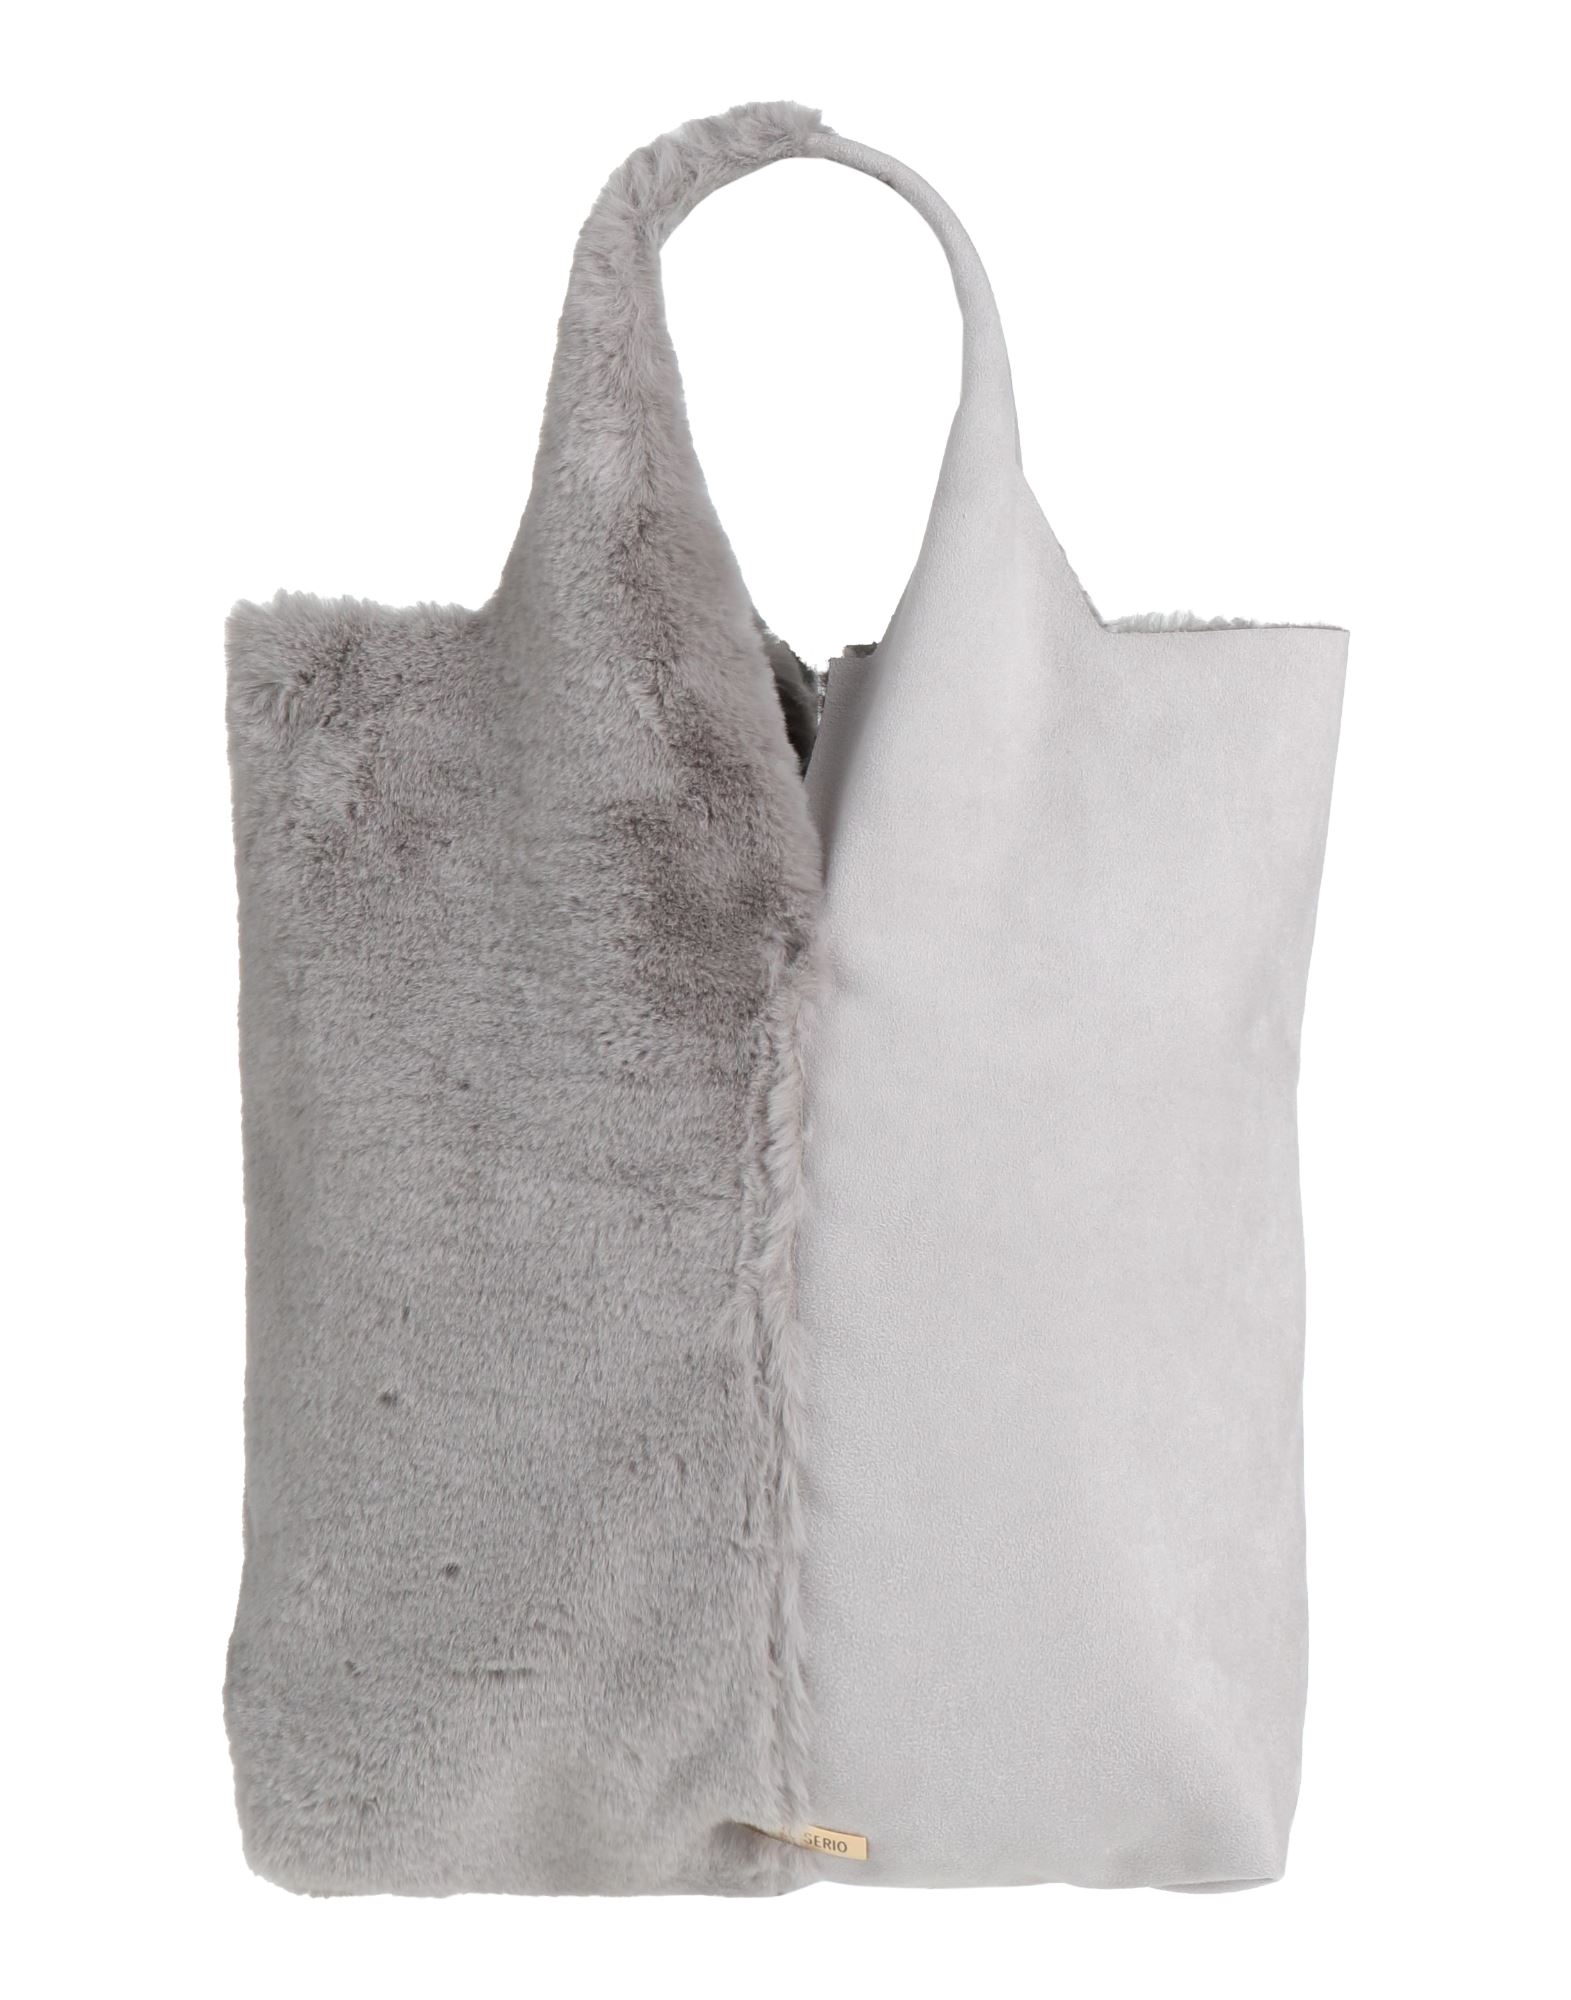 ANTONELLO SERIO Bags for Women | ModeSens